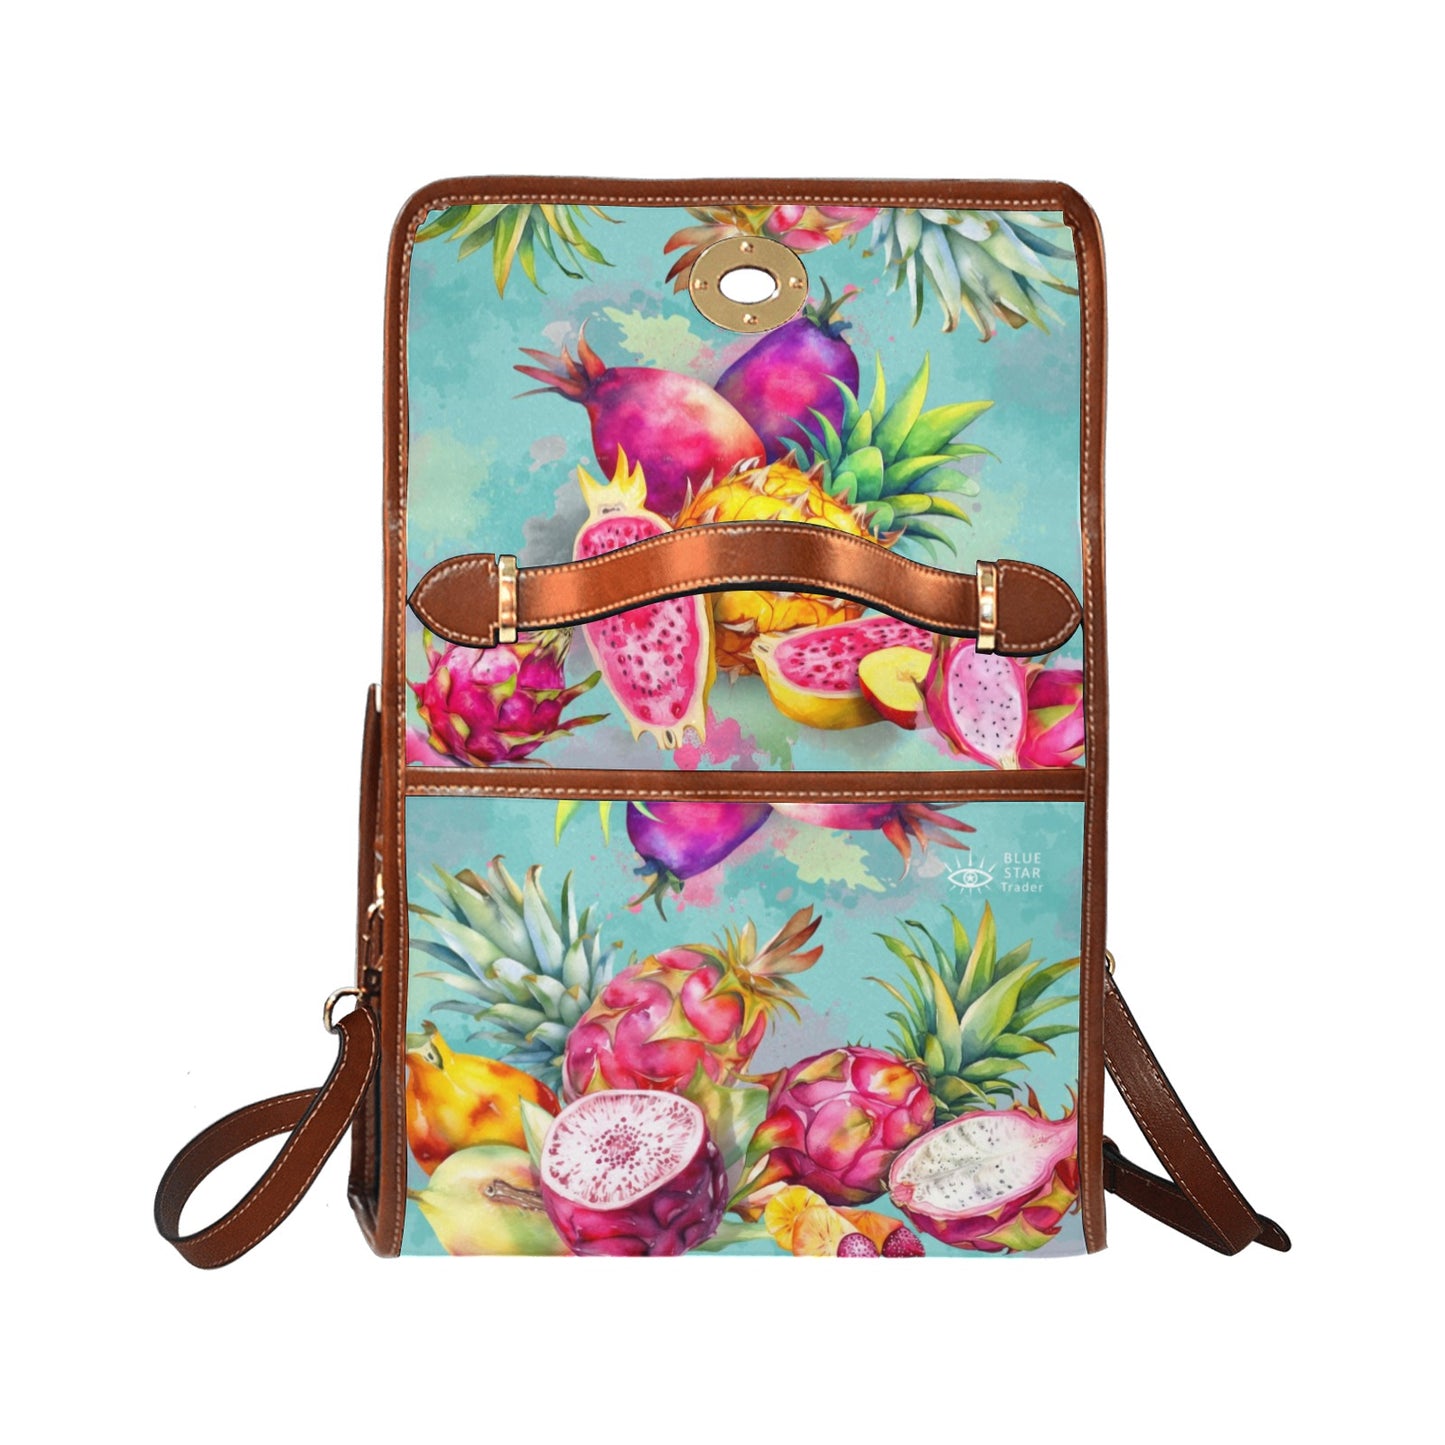 Colorful Dragon Fruit Purse, Canvas Satchel Bag